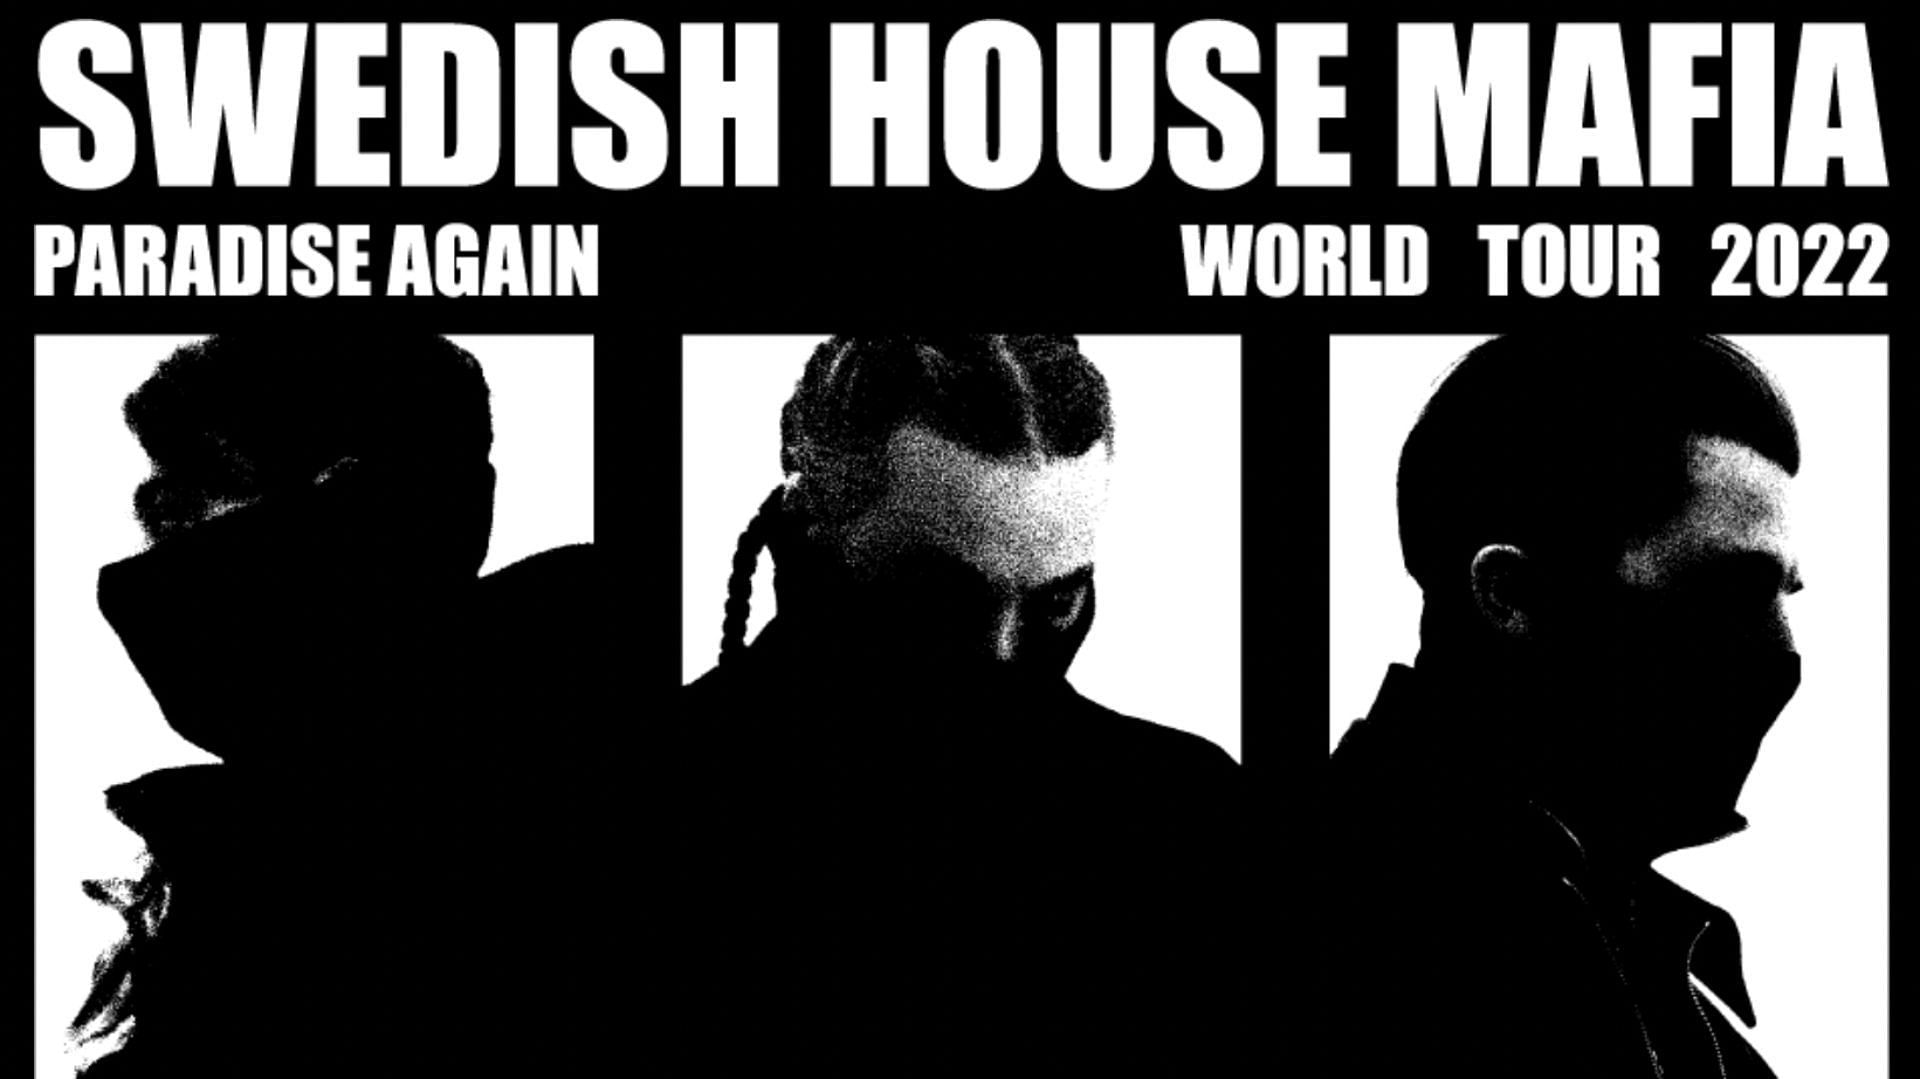 Swedish House Mafia Paradise Again World Tour 2022 tickets are available for sale. (Image via Swedish House Mafia)